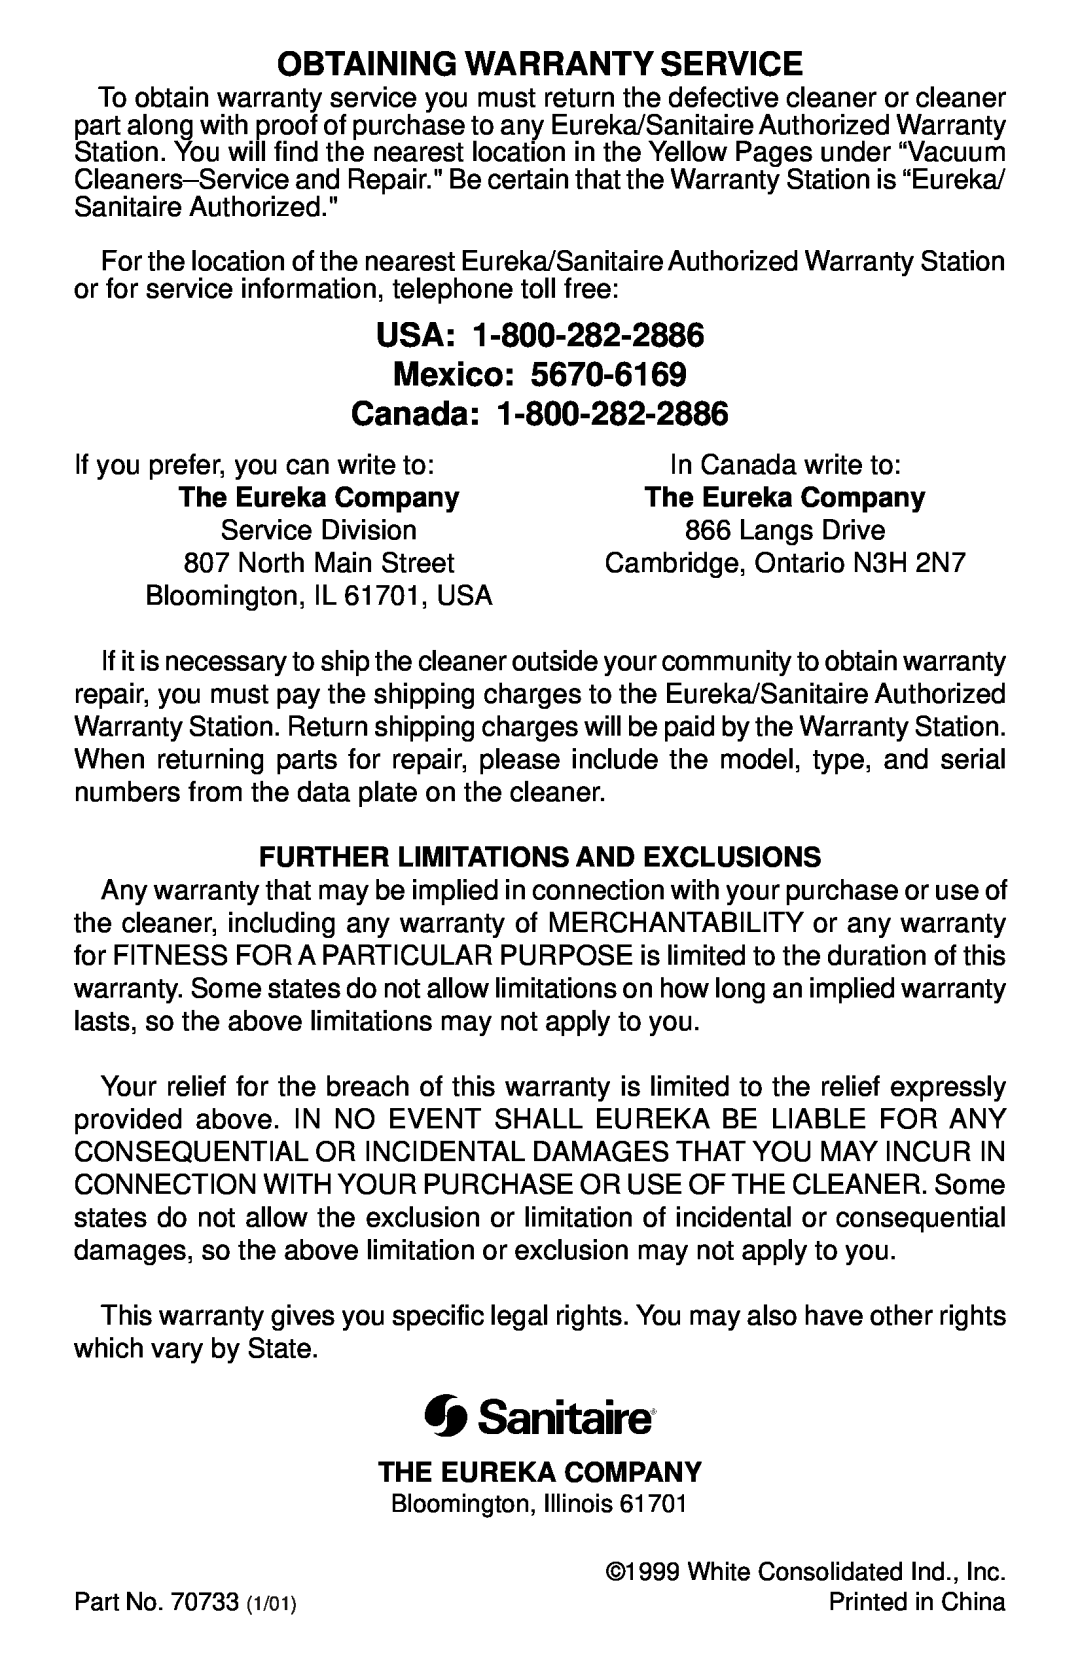 Sanitaire SC785 SERIES warranty Obtaining Warranty Service, USA Mexico Canada, The Eureka Company 